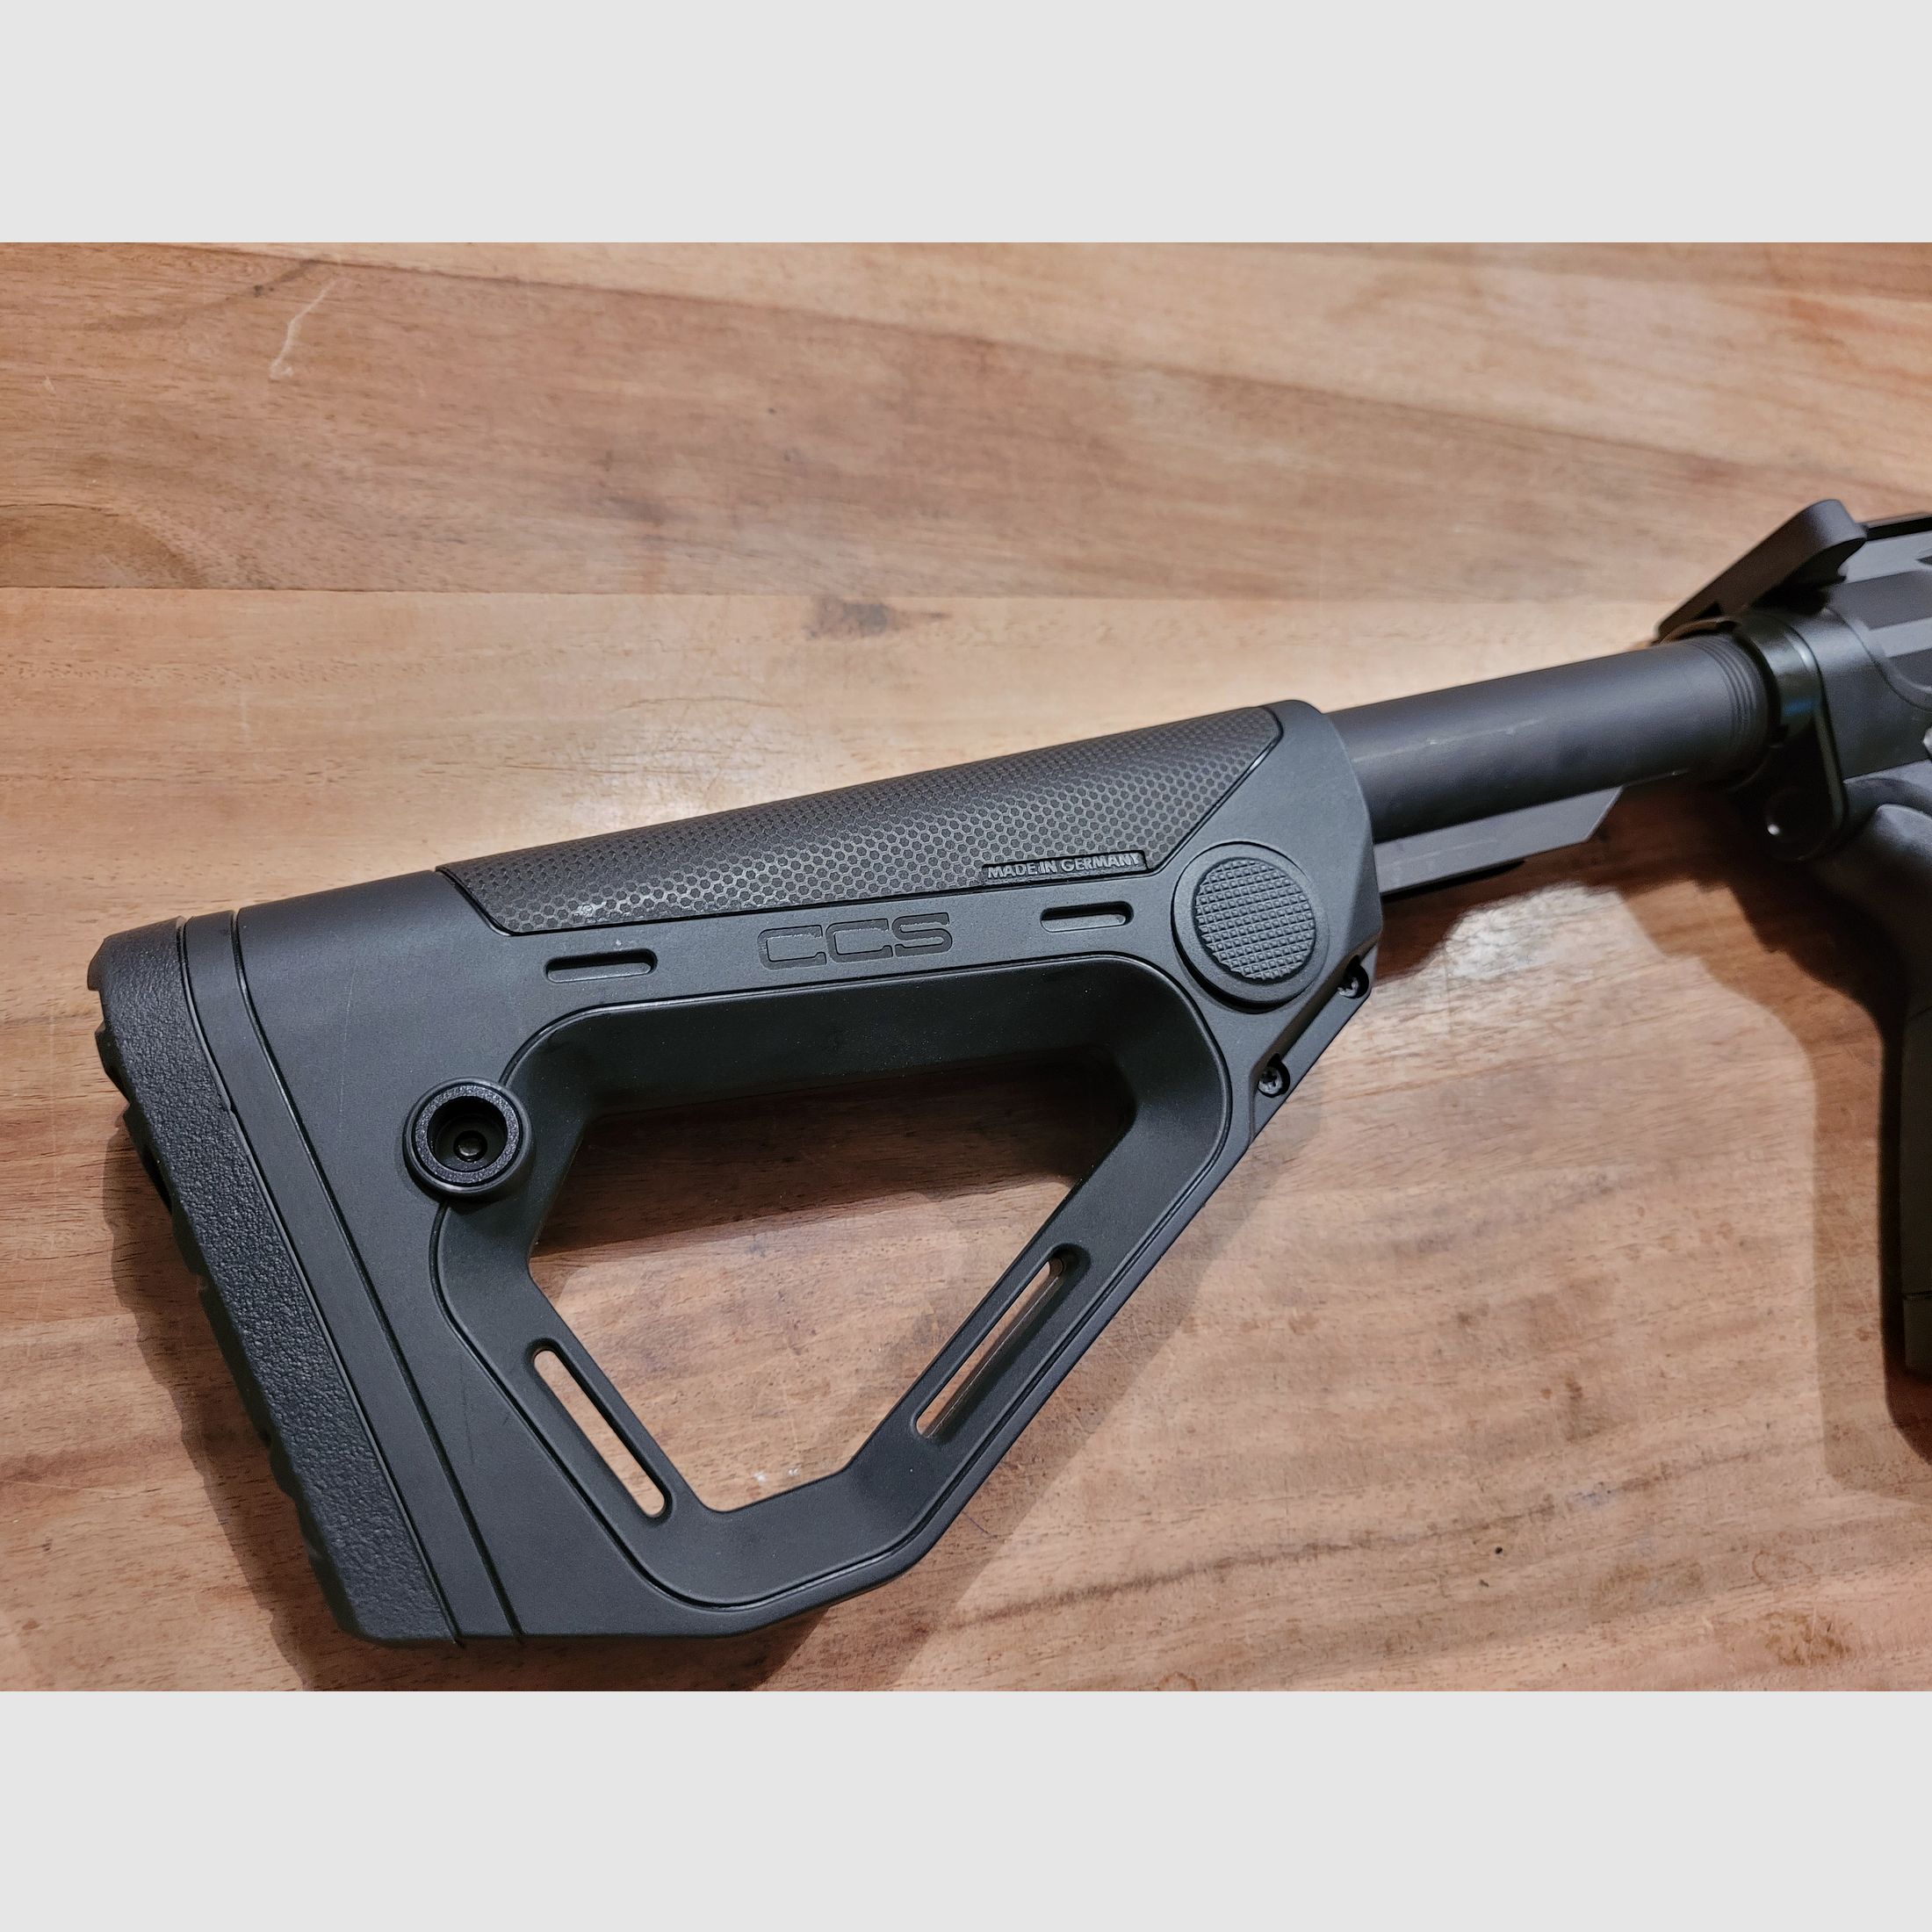 Hera The 9ers Sport "C" Sondermodell 2020 IPSC -10 Kaliber 9mm Luger